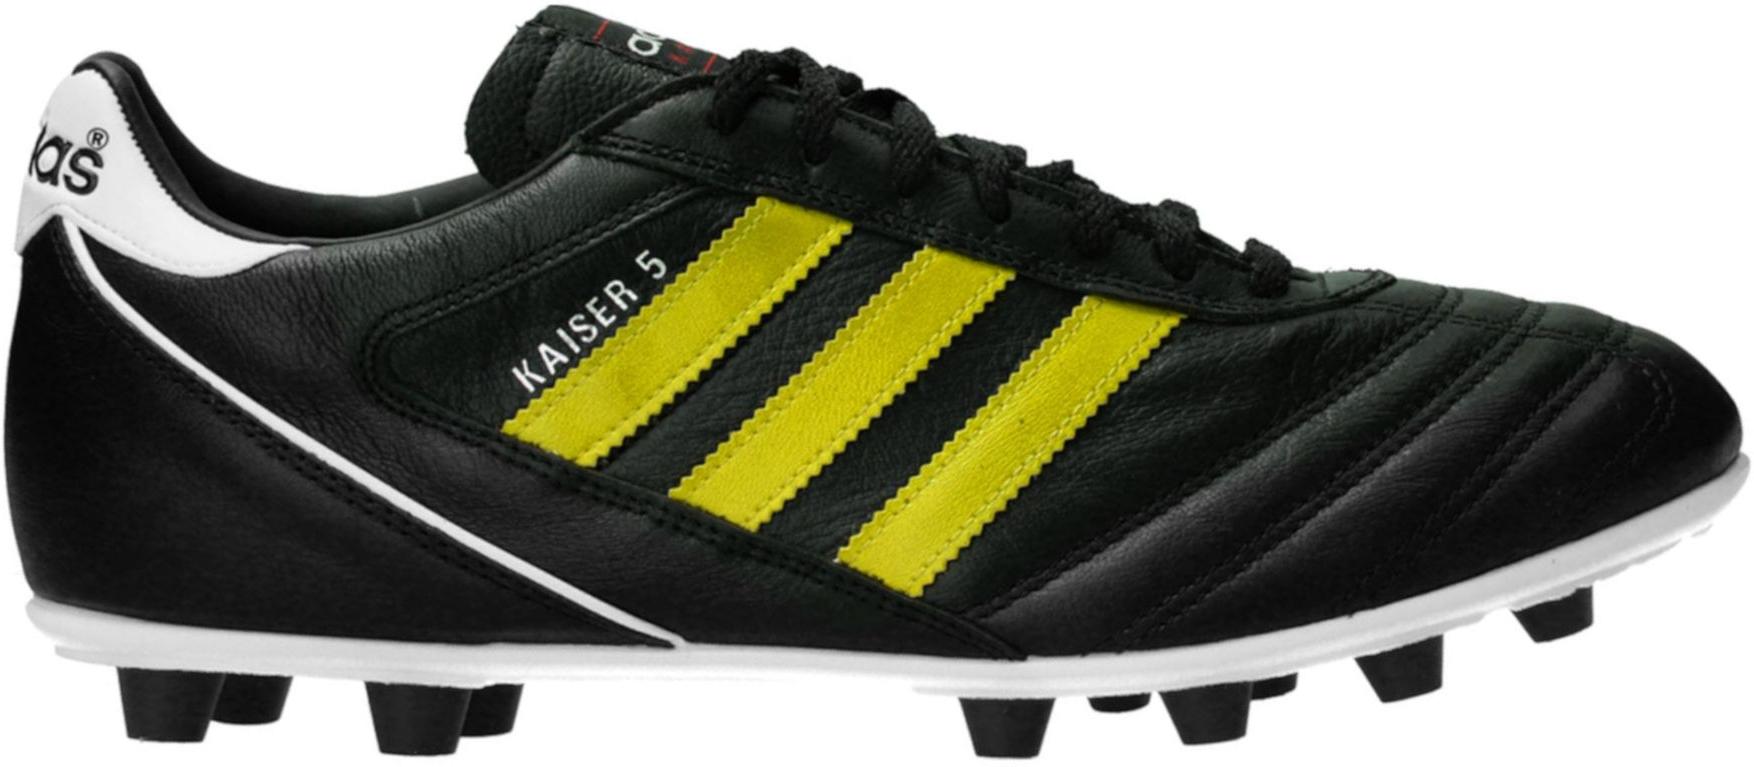 Kopačky adidas  Kaiser 5 Liga FG Yellow Stripes Schwarz černá